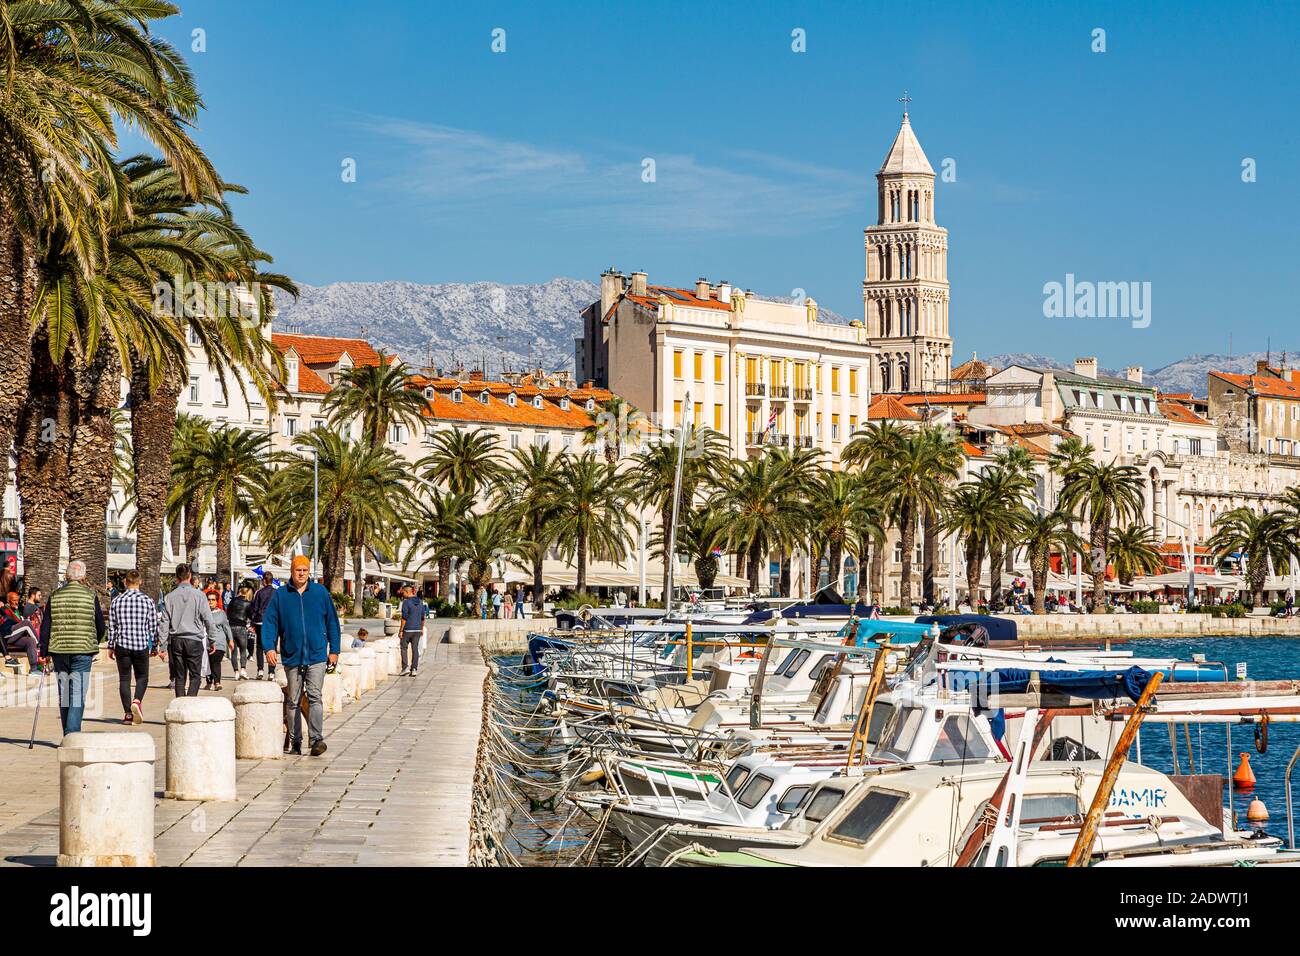 Panorama von Menschen zu Fuß entlang der sonnigen Ufer Promenade Riva mit die Kathedrale des Heiligen Domnius, gegen den blauen Himmel, Split, Kroatien Europa Stockfoto